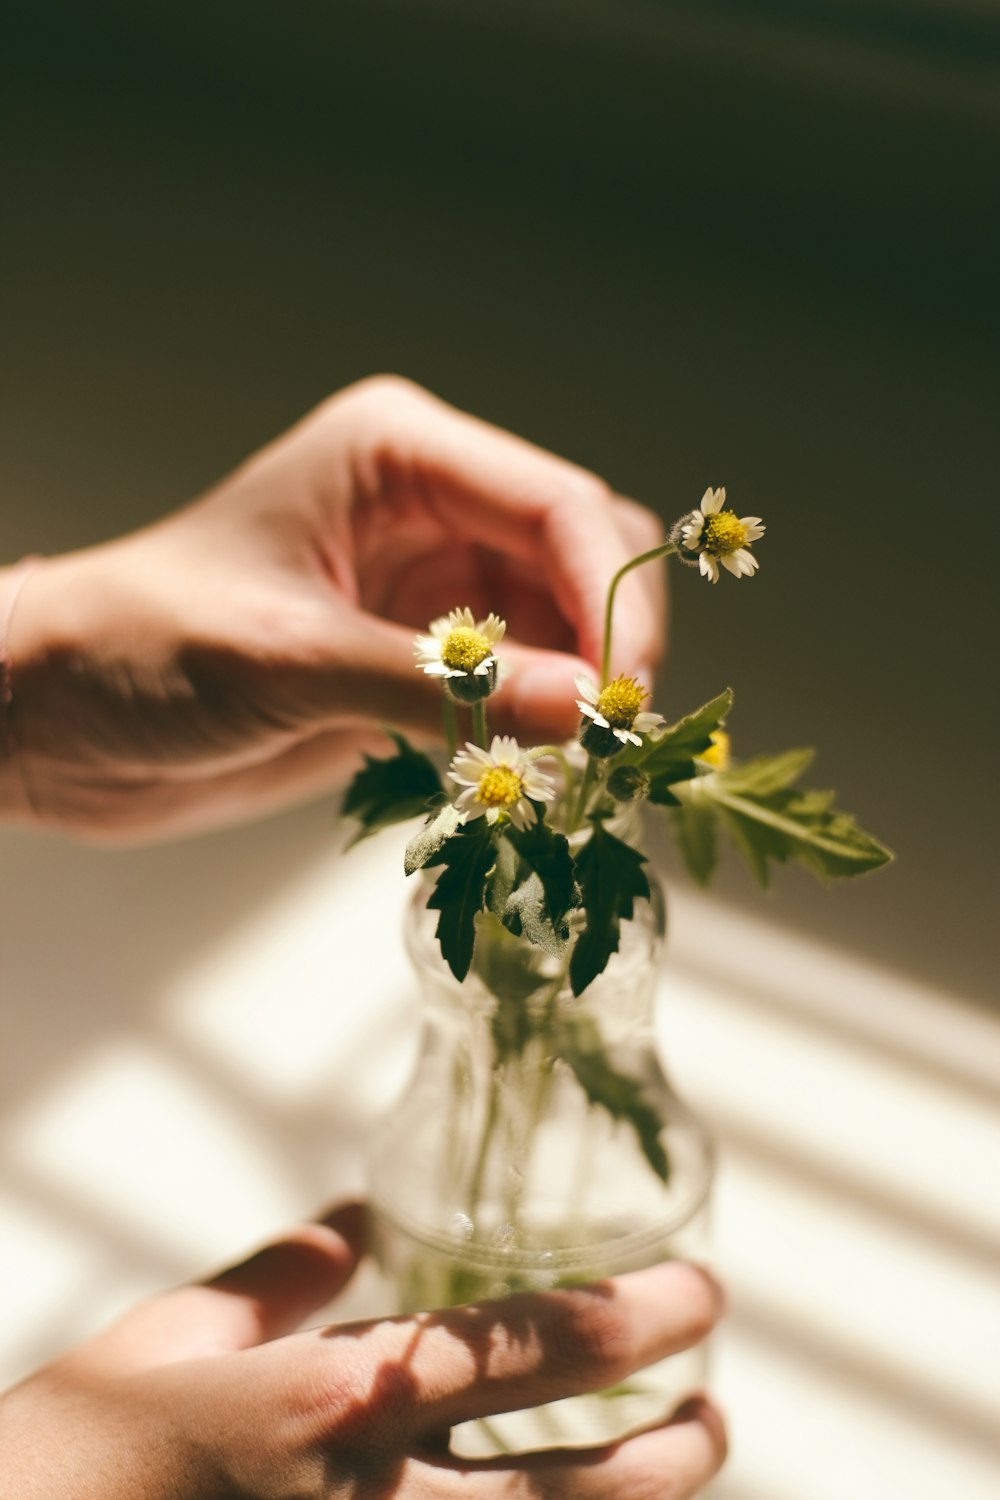 mãos da pessoa segurando a folha da flor de margarida branca e vaso de vidro transparente